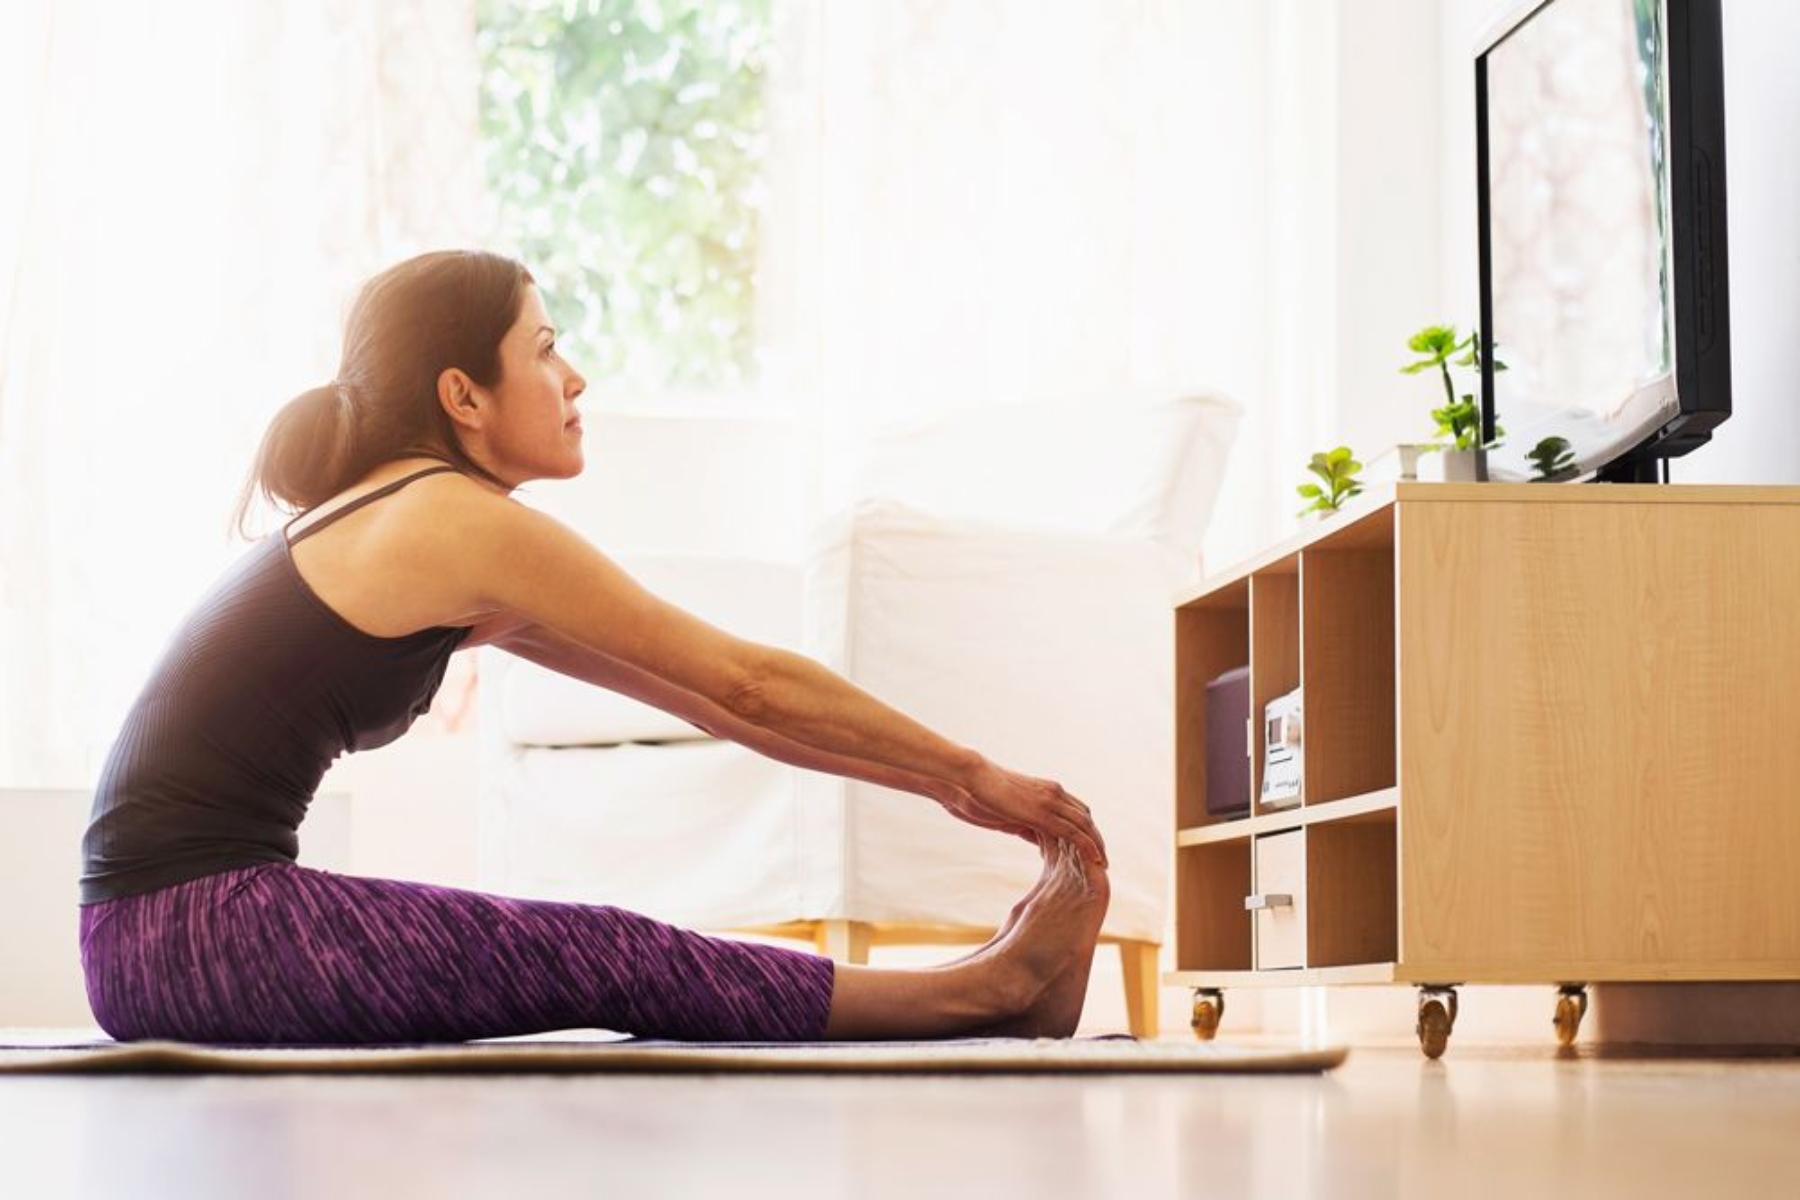 Άσκηση αδυνάτισμα: 6 εύκολες ασκήσεις για να χάσετε βάρος μπροστά στην τηλεόραση [vid]